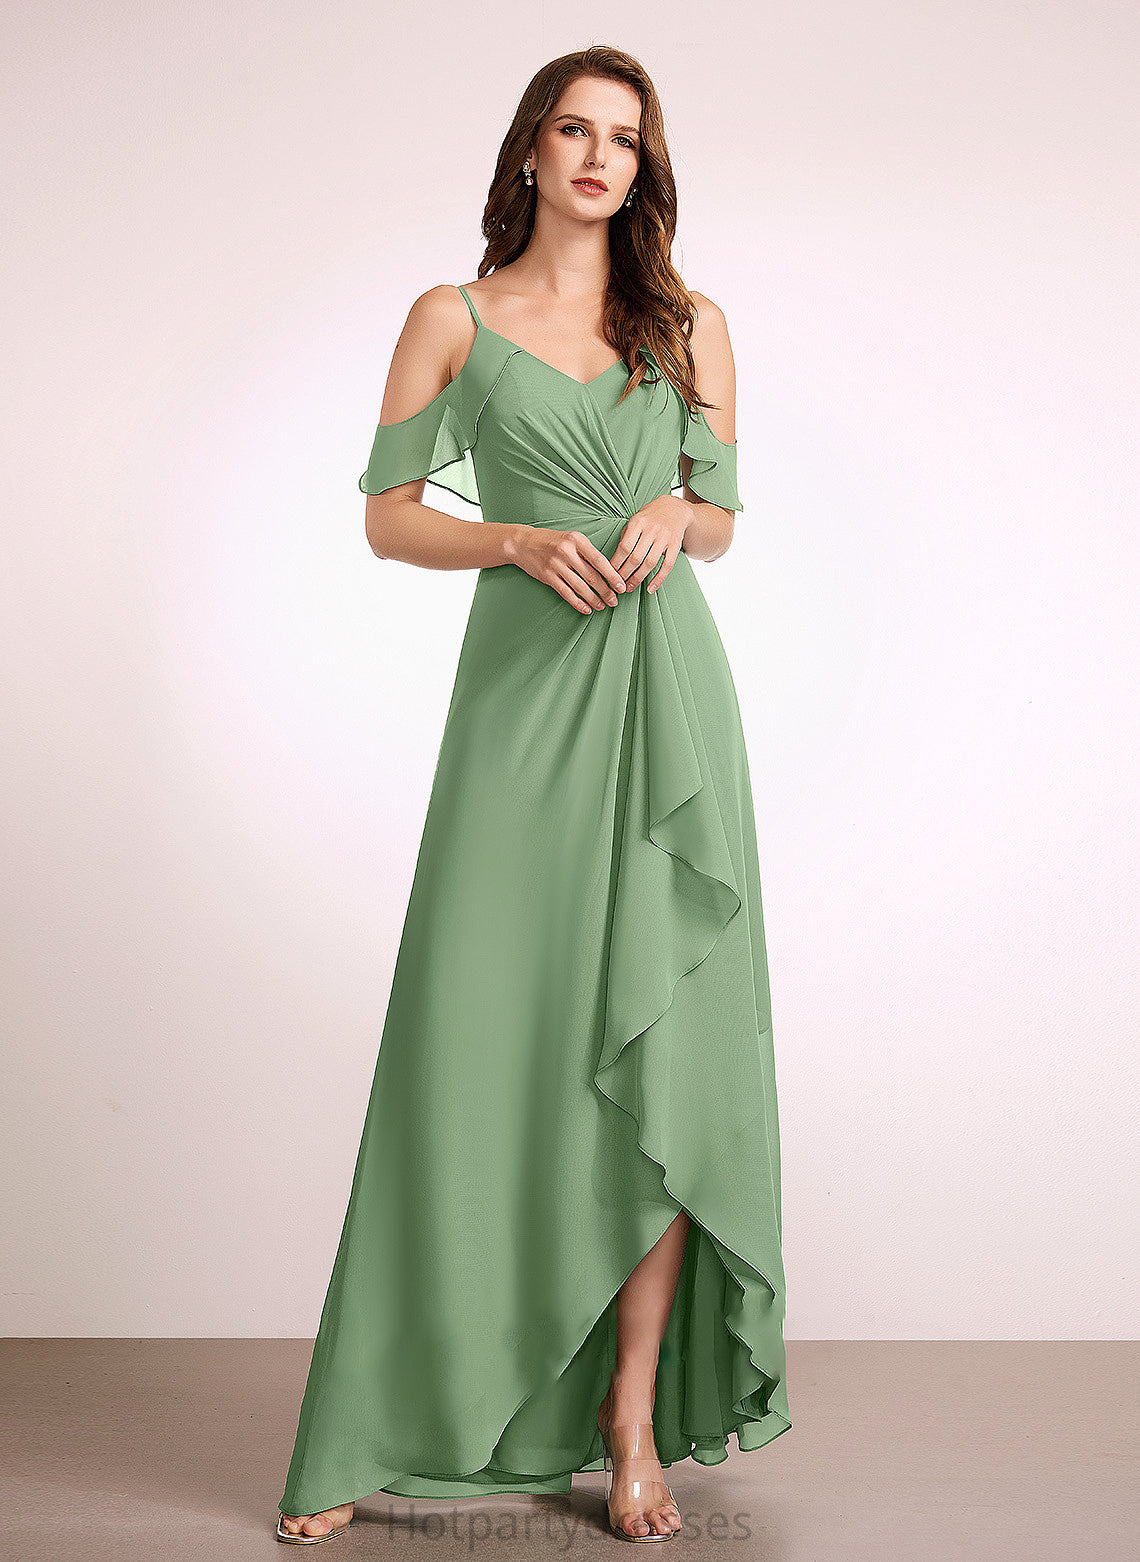 Silhouette A-Line Length V-neck Neckline Fabric SplitFront Asymmetrical Embellishment Karli Natural Waist A-Line/Princess Bridesmaid Dresses